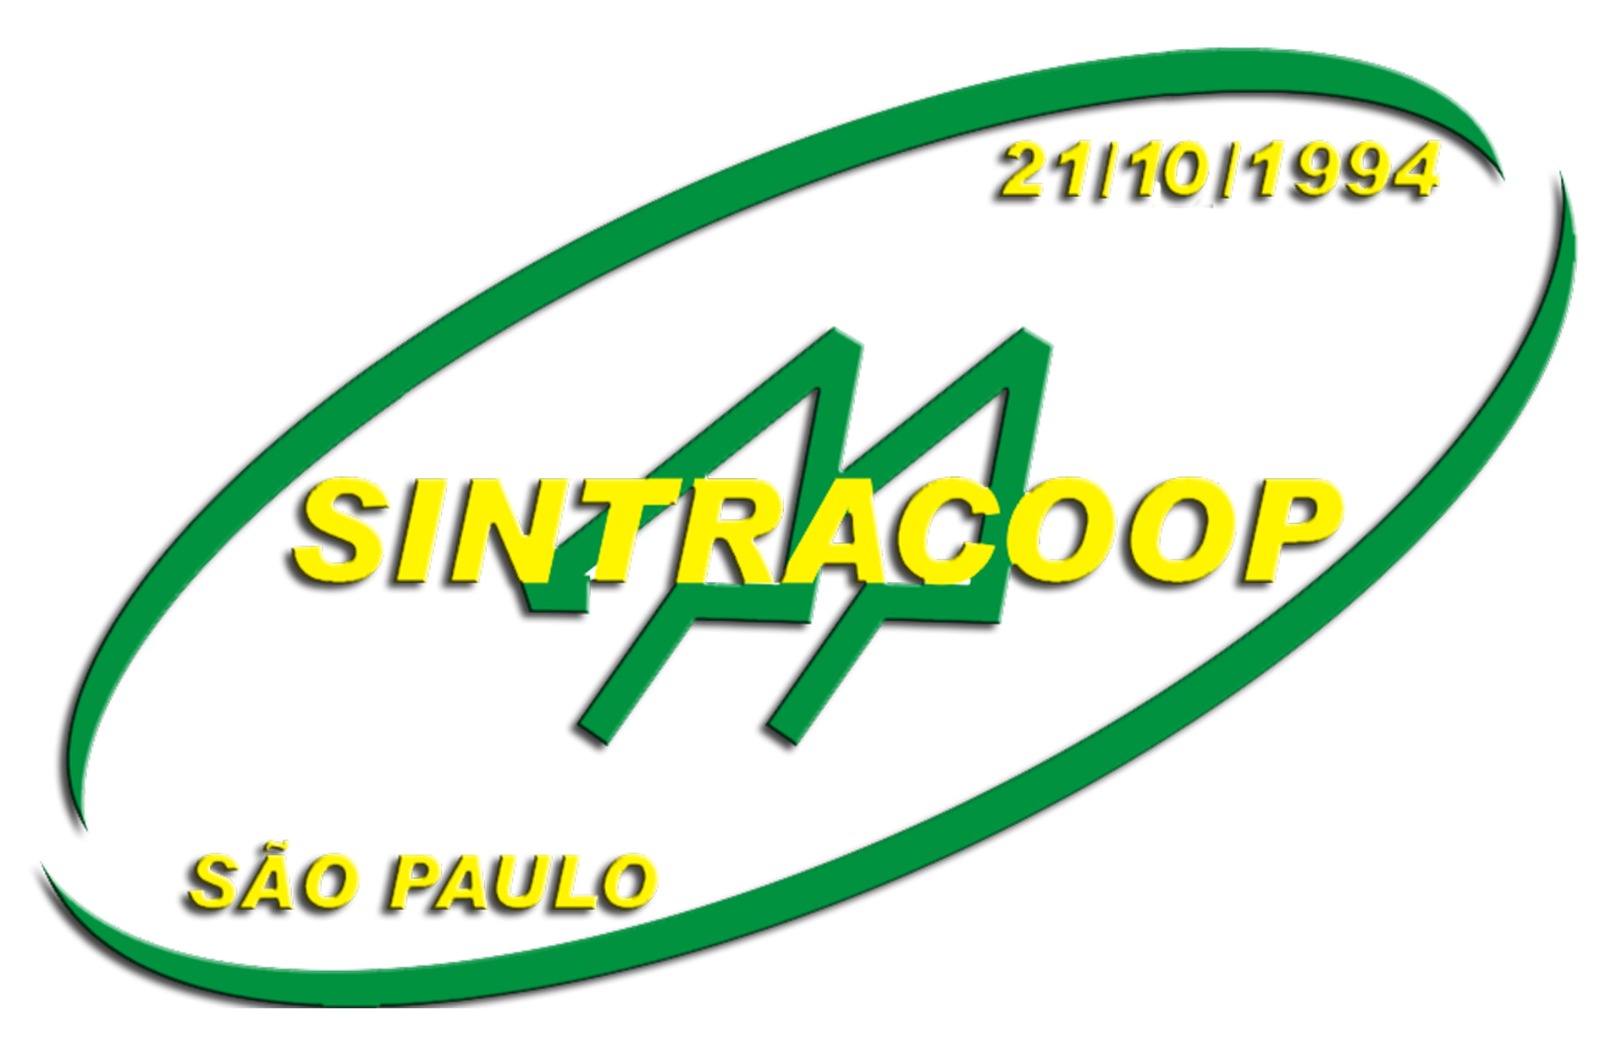 Sintracoop-SP